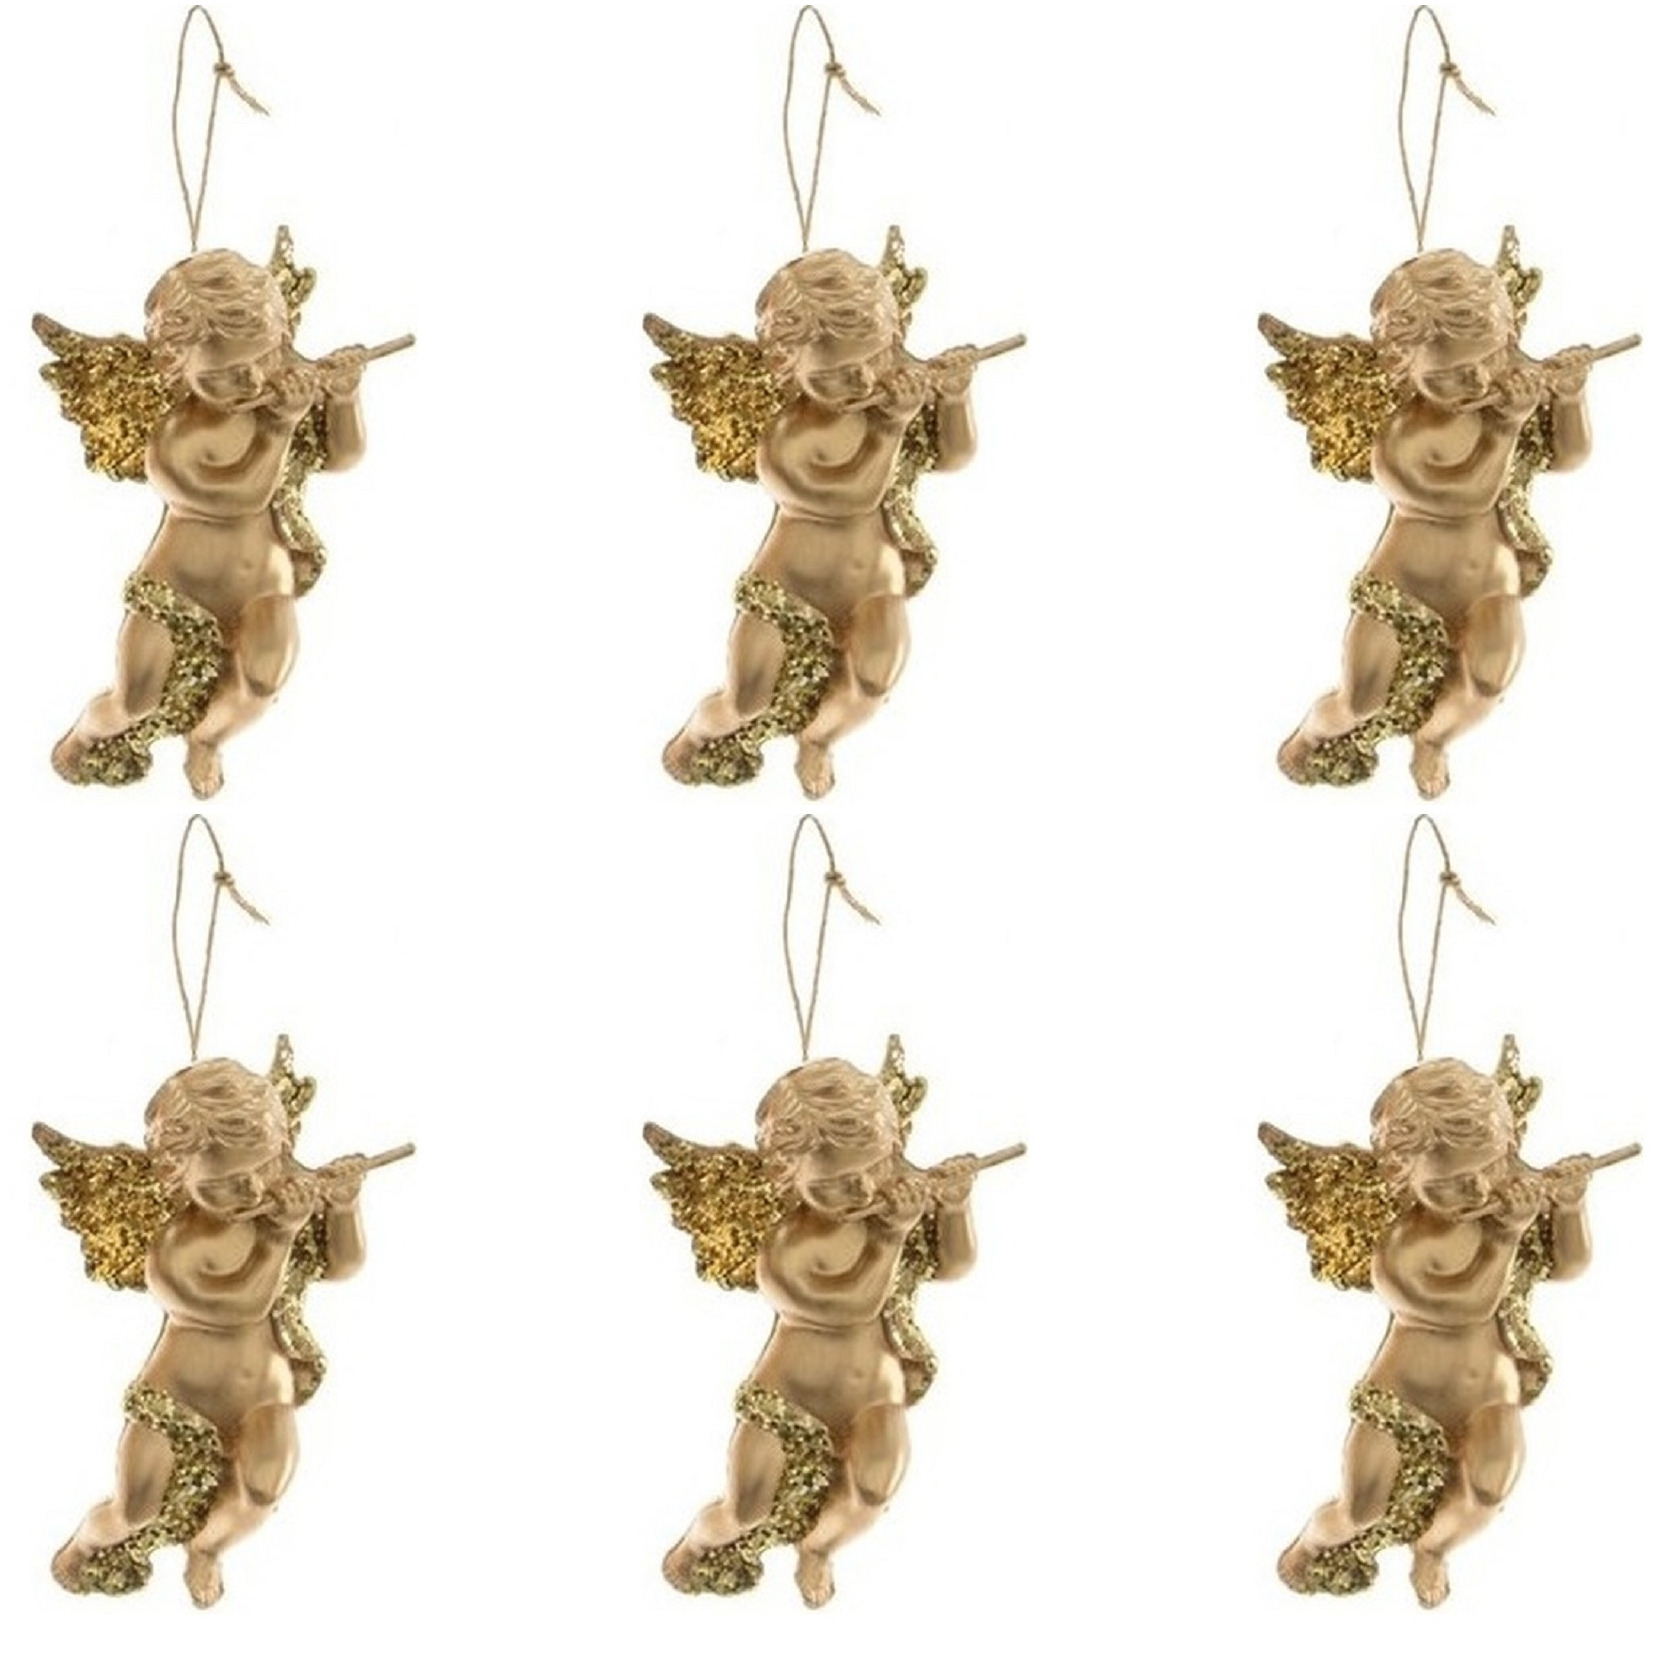 6x Kerstboomhanger-Kersthanger gouden engelen met dwarsfluit 10 cm